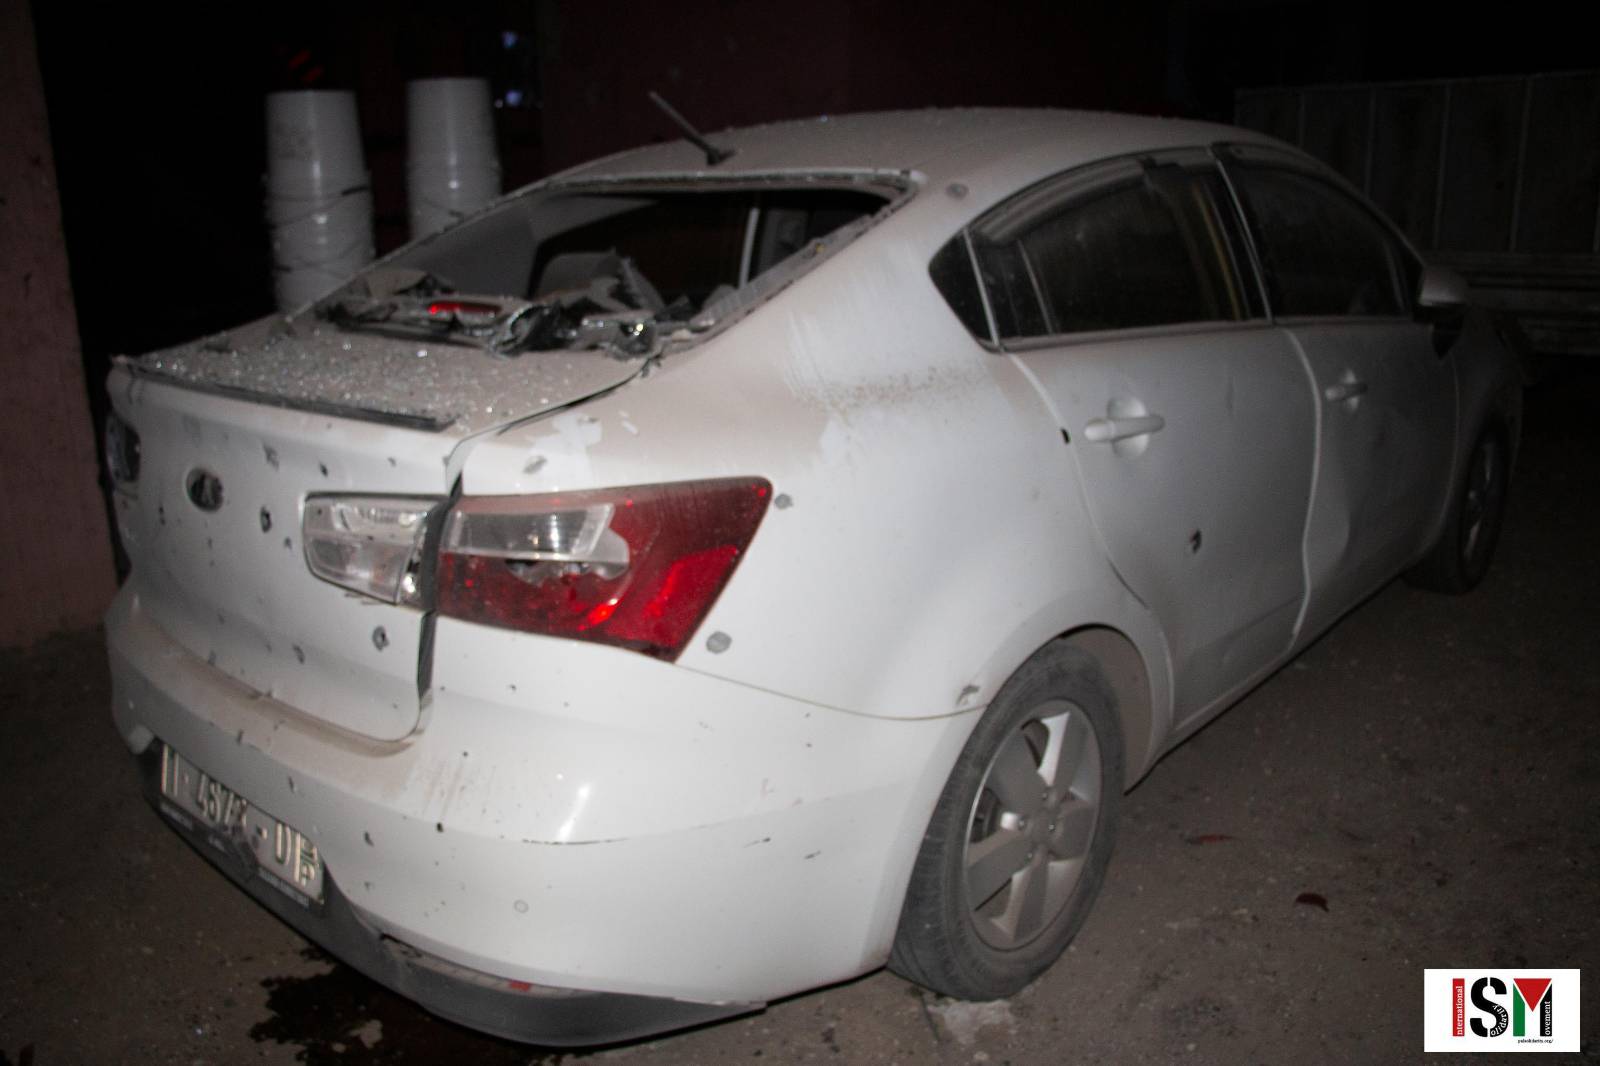 A damaged Palestinian car in Beqa Al Sharqiya